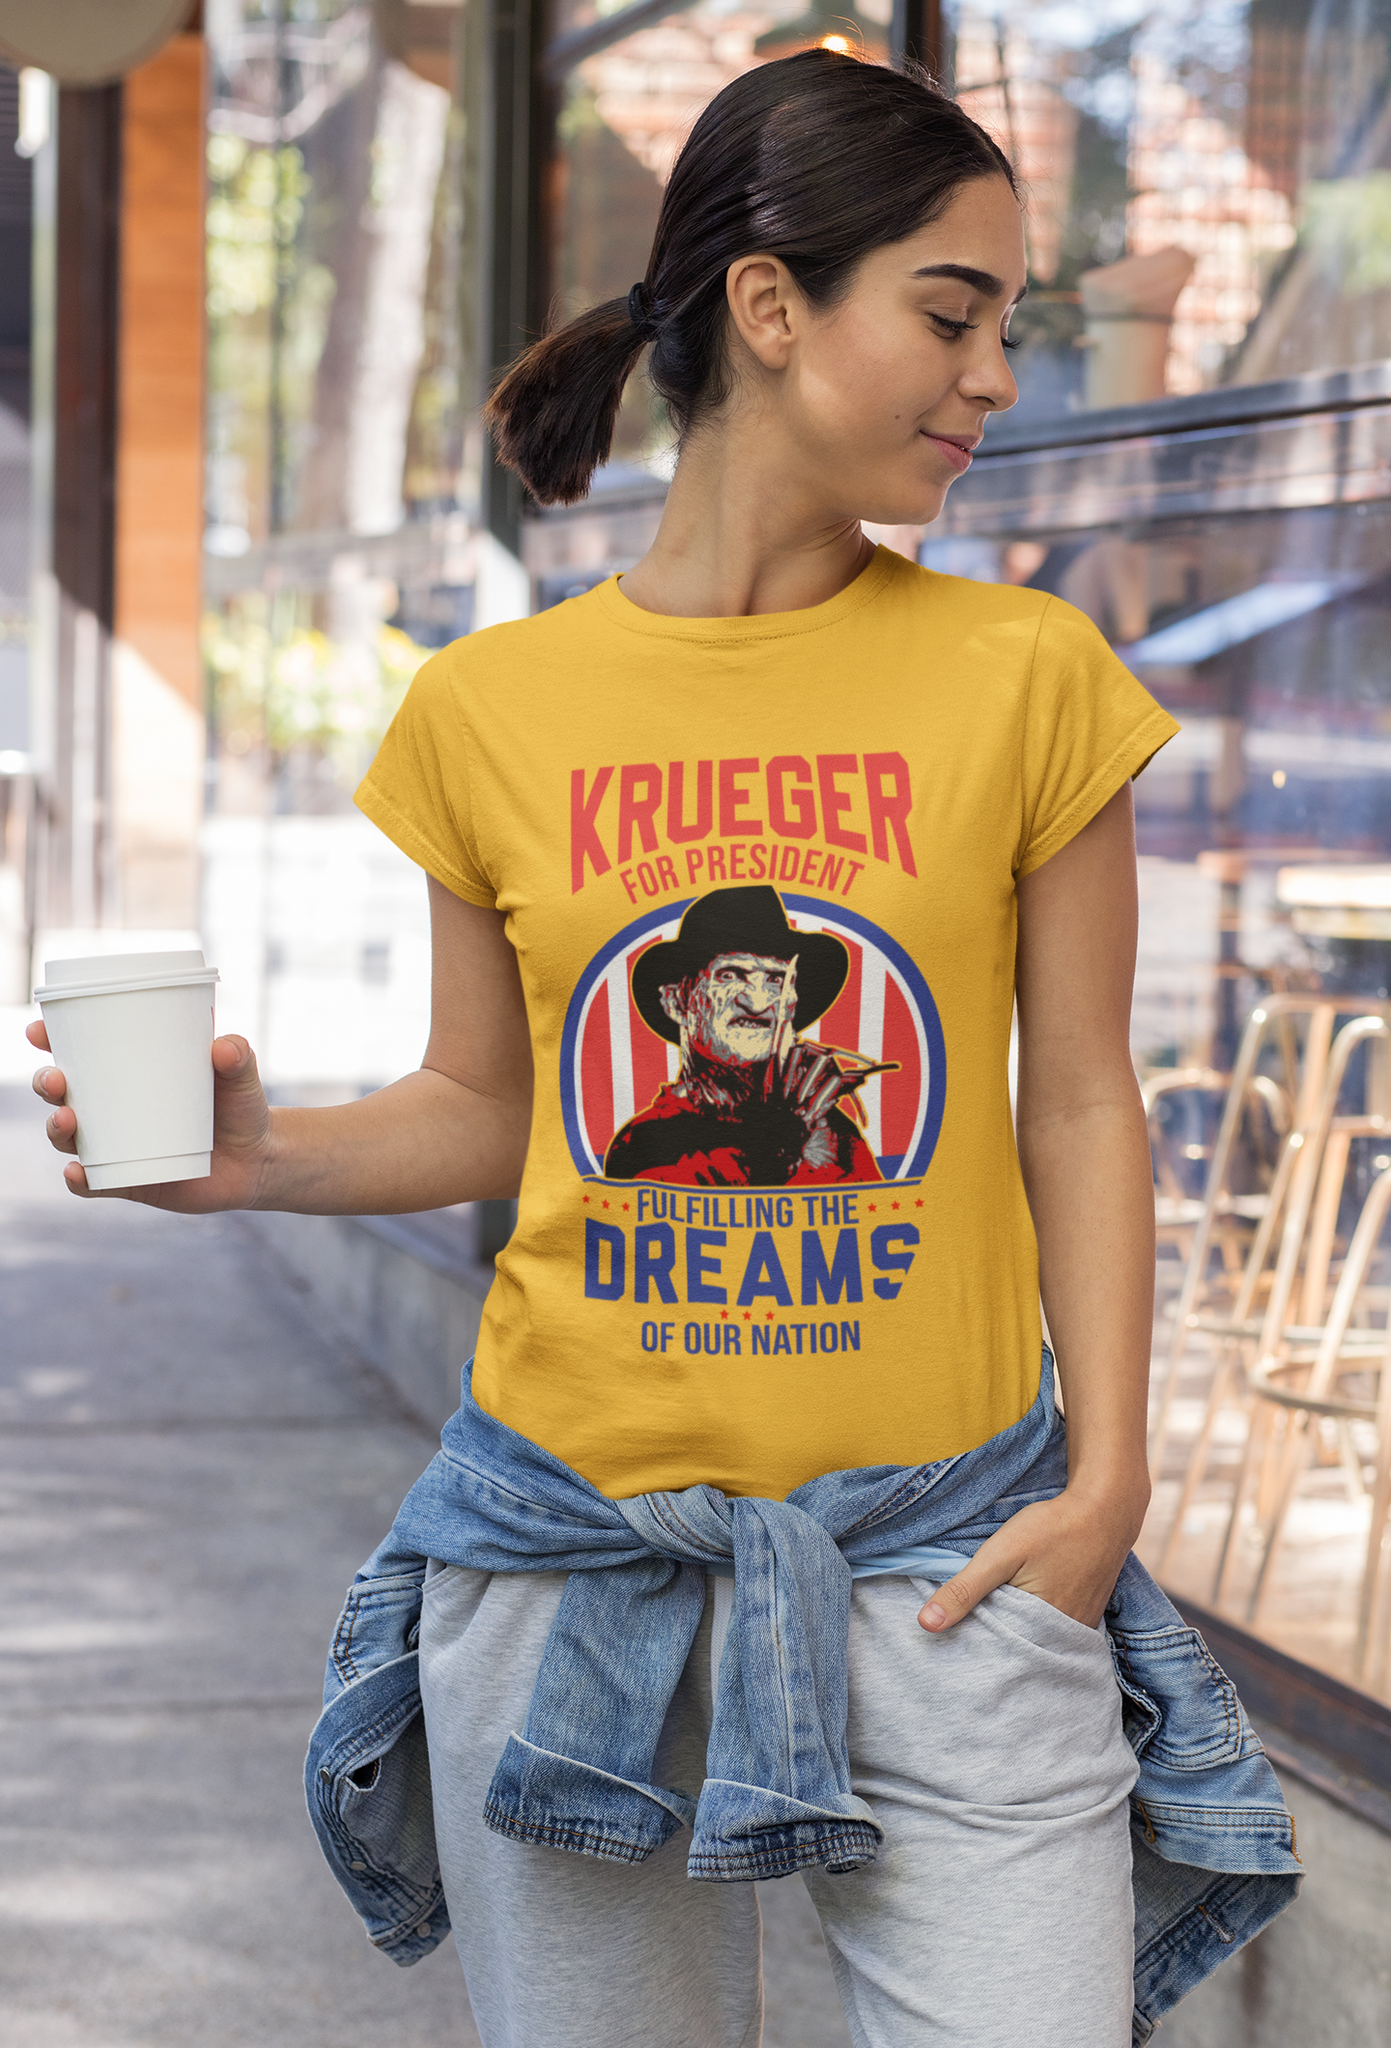 Nightmare On Elm Street Shirt, Fullfilling The Dreams Of Our Nation Shirt, Freddy Krueger For President 2024 Shirt